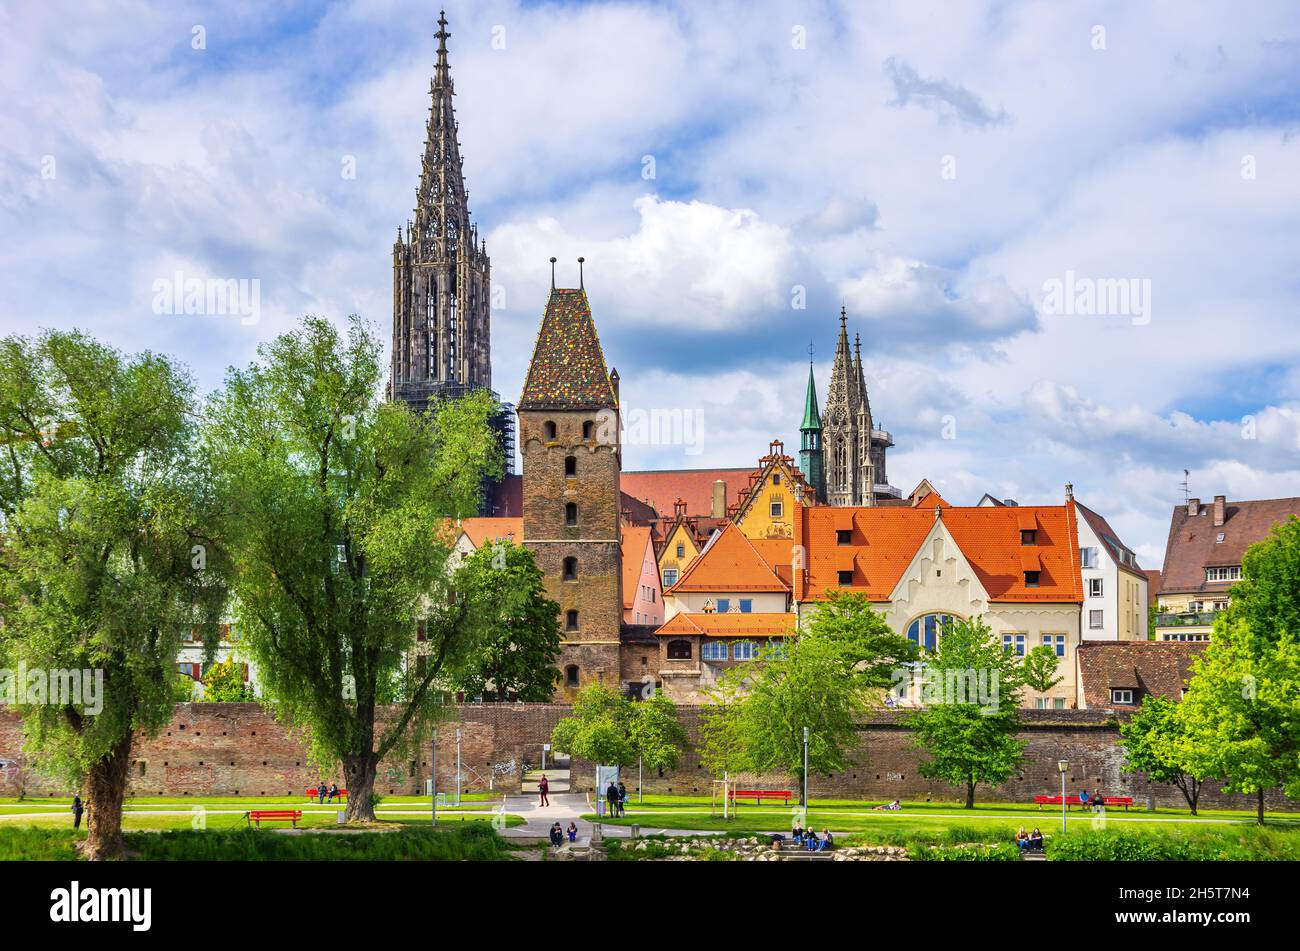 Ulm, Baden-Württemberg, Germania: Le case storiche del quartiere dei pescatori, le mura della città vecchia, la Torre Pendente e la Minster. Foto Stock